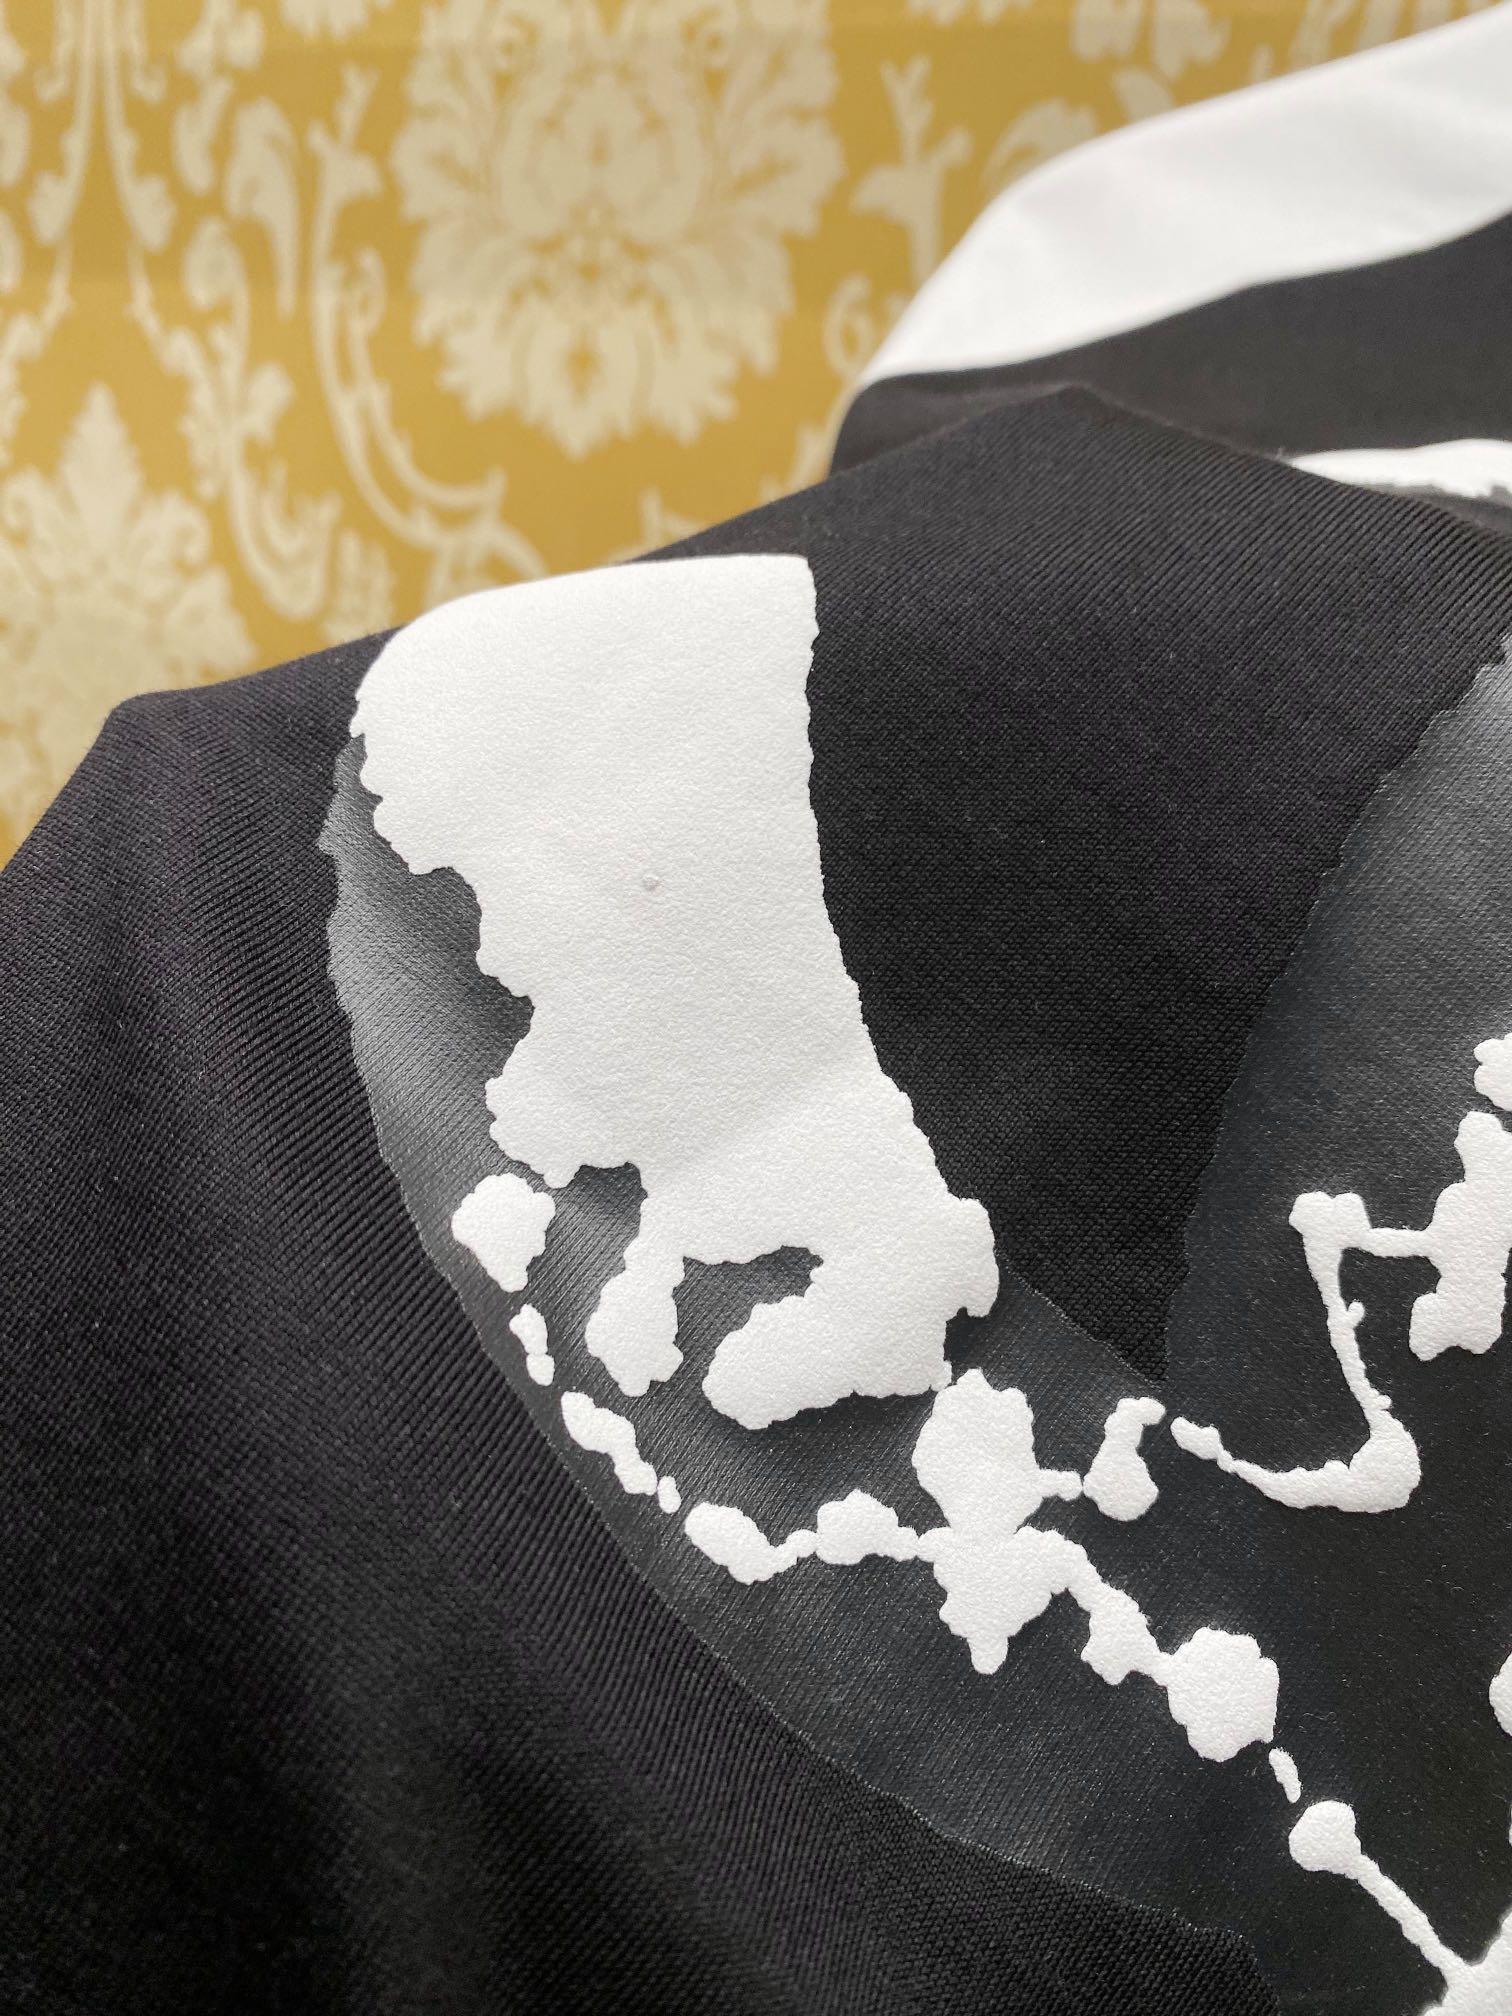 人気新作アイテム chanel の t シャツ偽物 純綿 トップス 半袖 ゆったり 柔らかい ロゴプリント ブラック_4